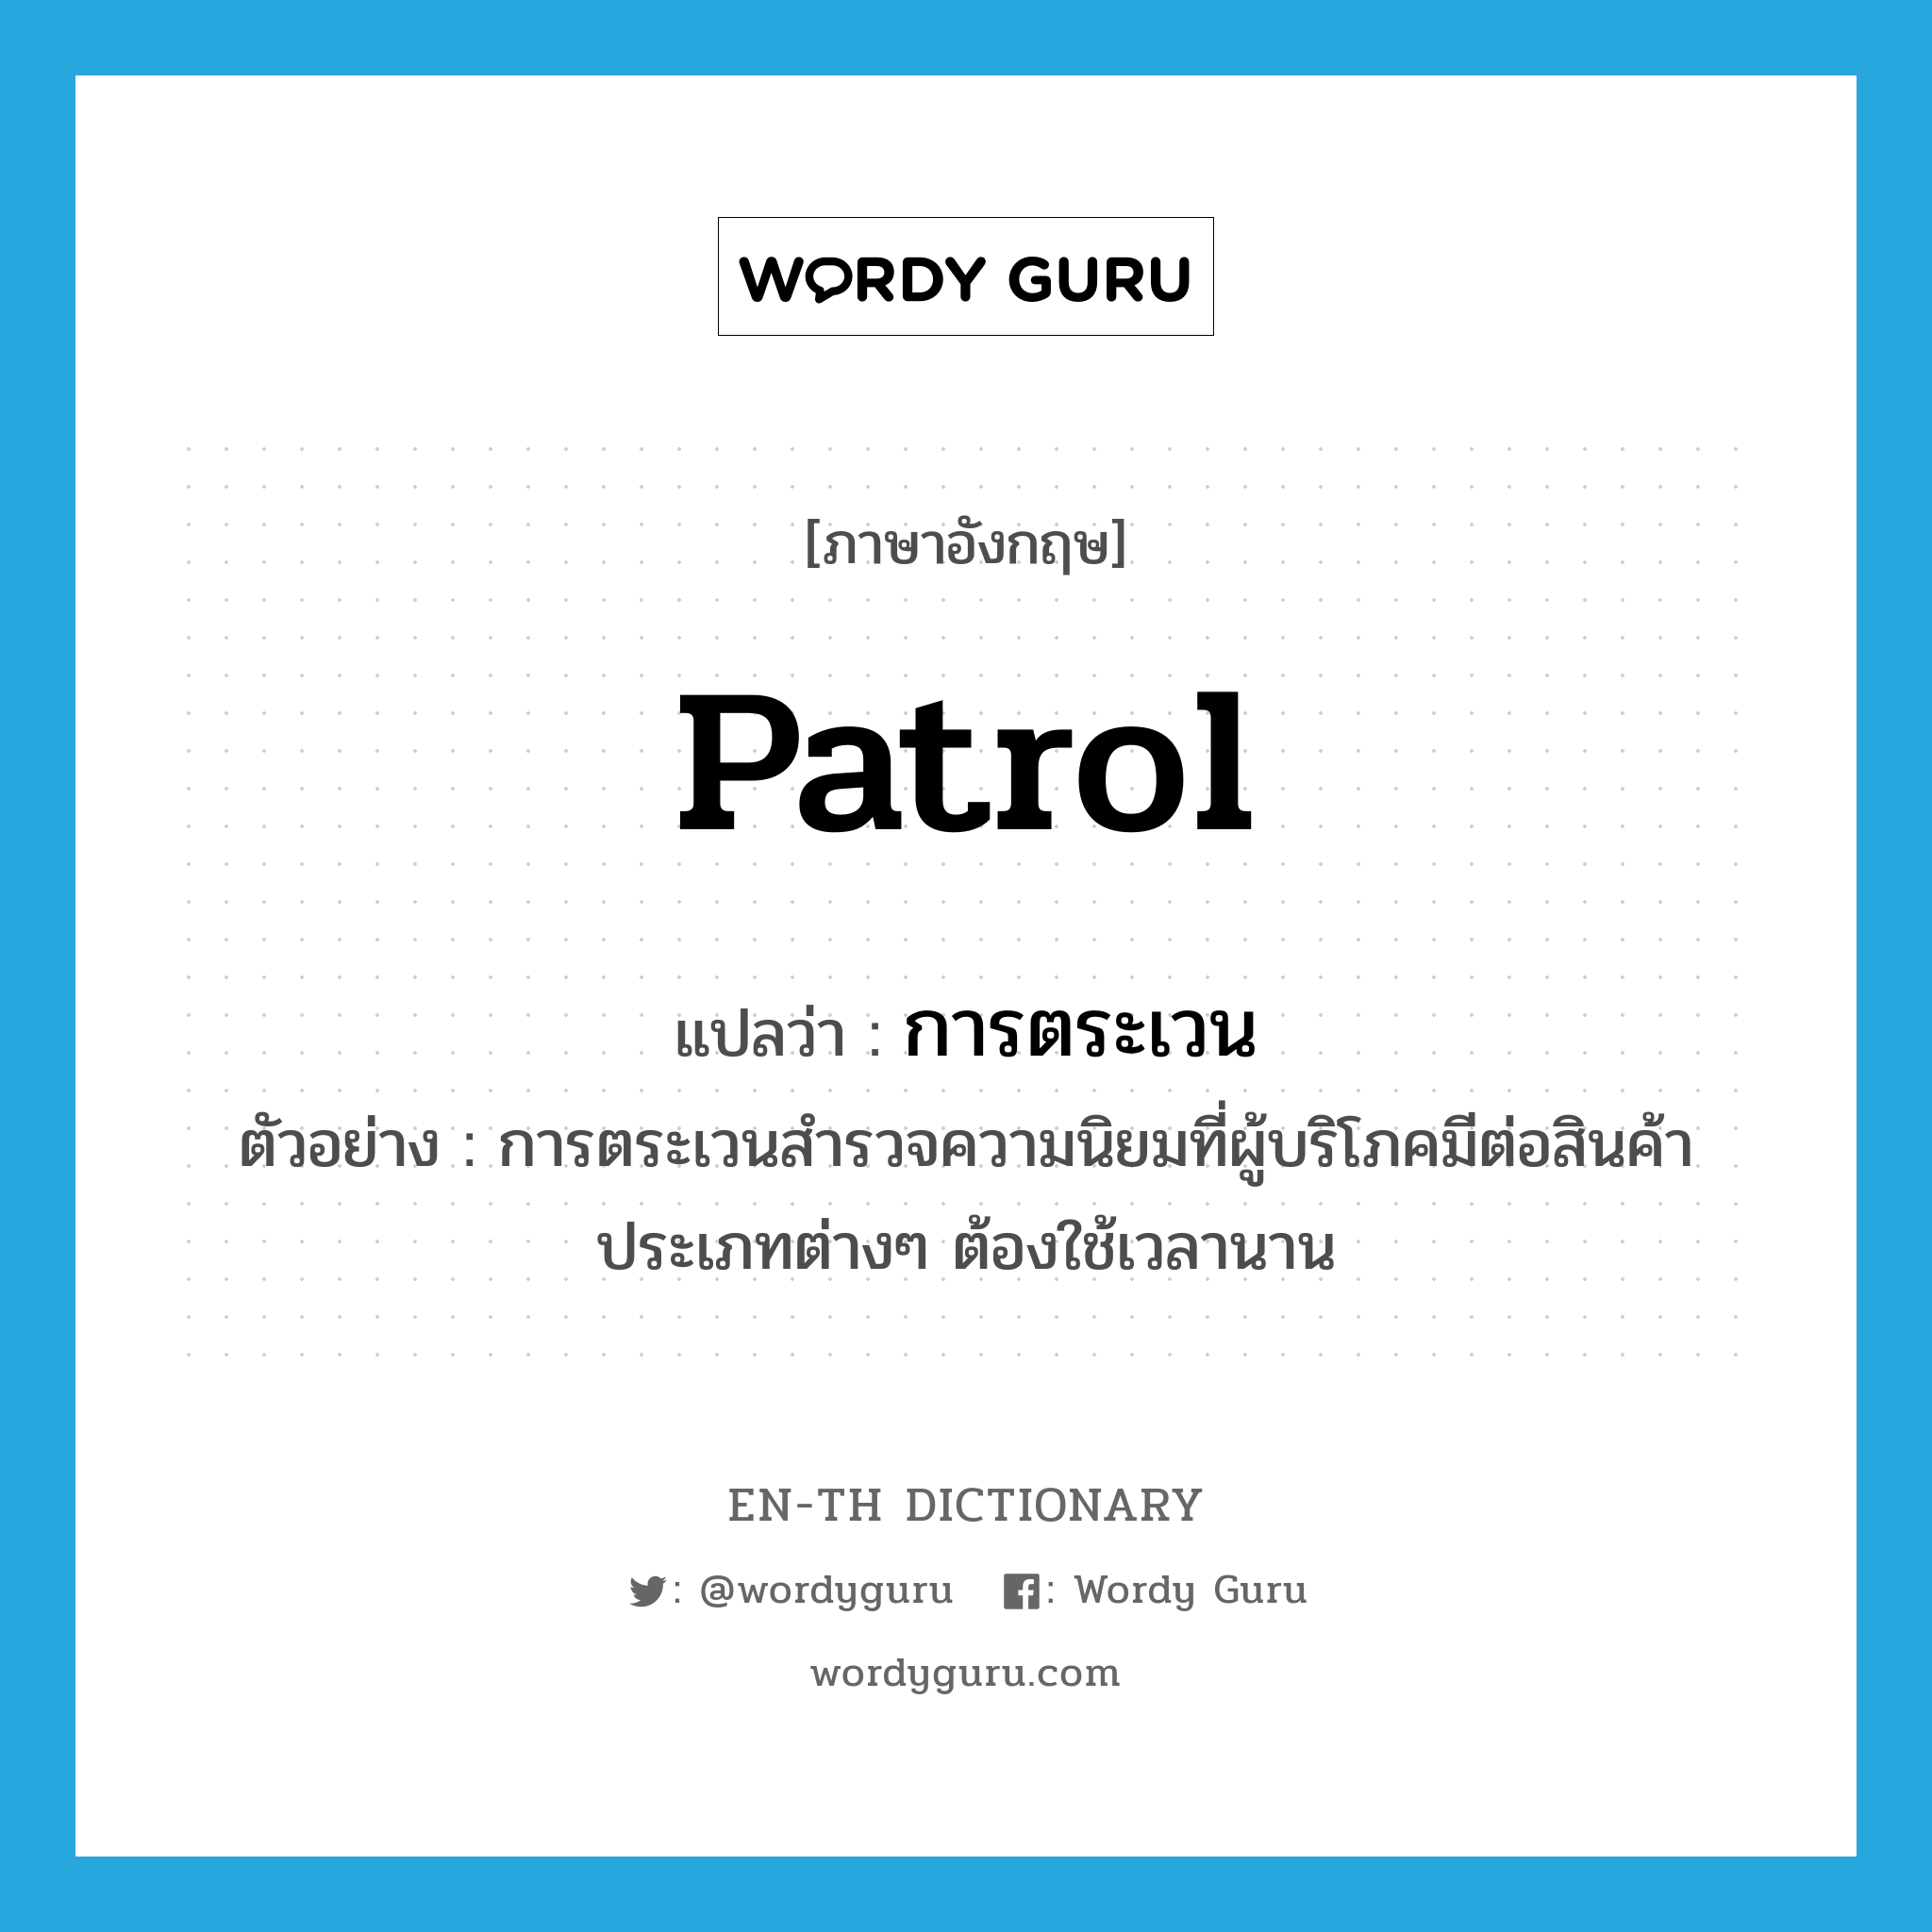 patrol แปลว่า?, คำศัพท์ภาษาอังกฤษ patrol แปลว่า การตระเวน ประเภท N ตัวอย่าง การตระเวนสำรวจความนิยมที่ผู้บริโภคมีต่อสินค้าประเภทต่างๆ ต้องใช้เวลานาน หมวด N